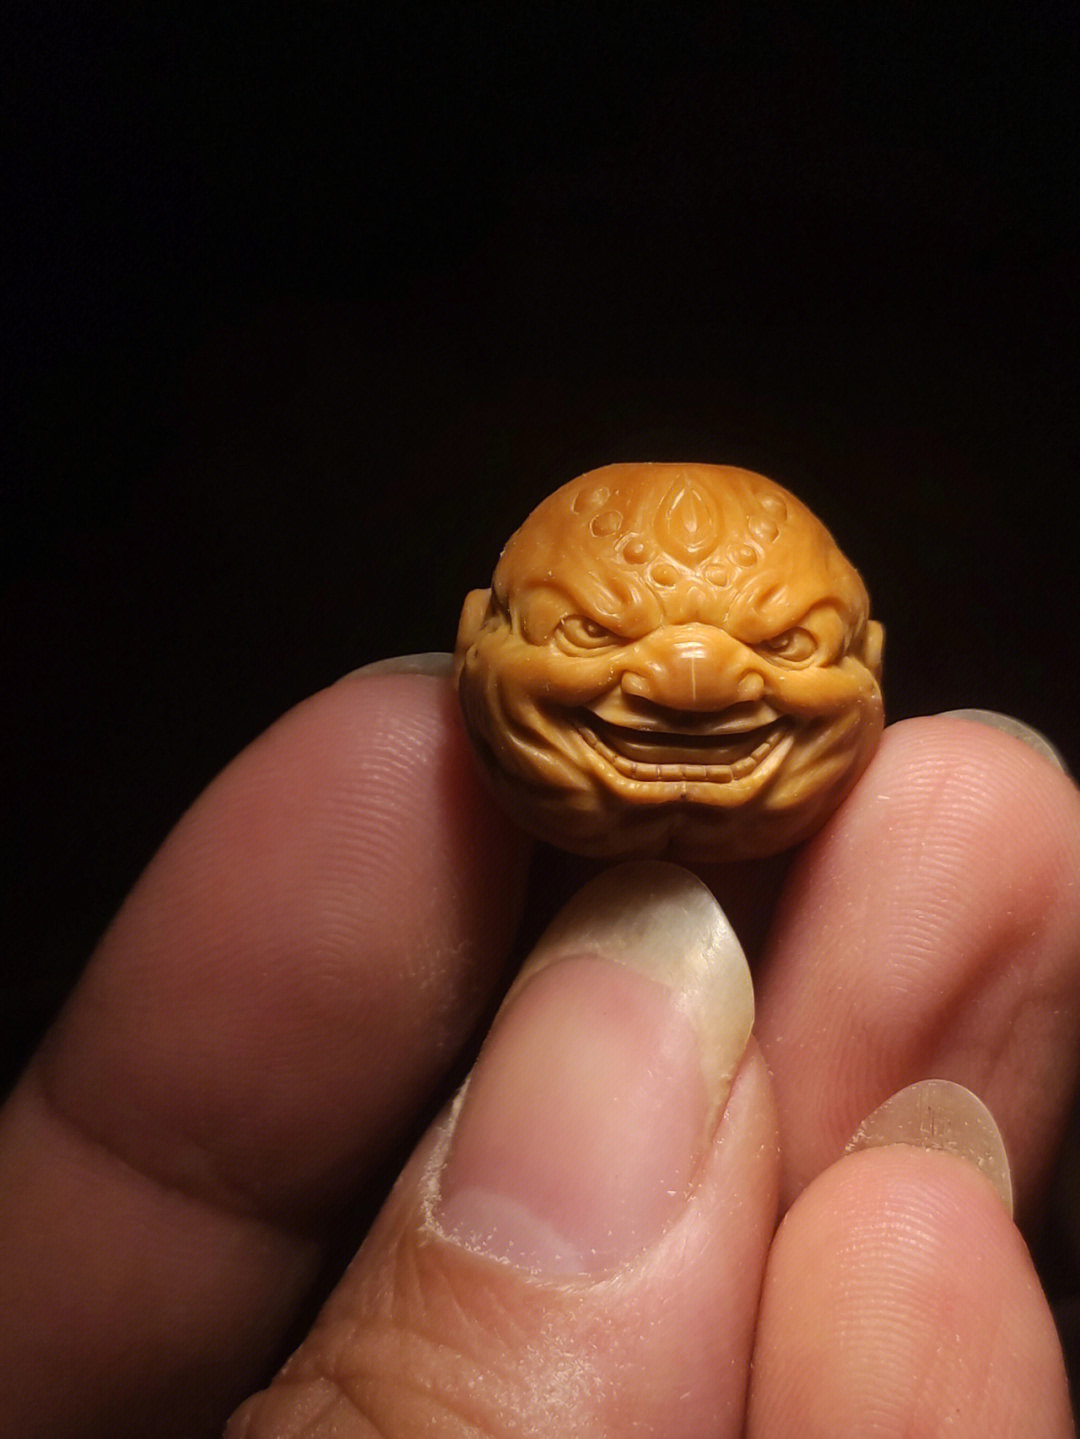 猴头核桃猴脸雕刻图样图片